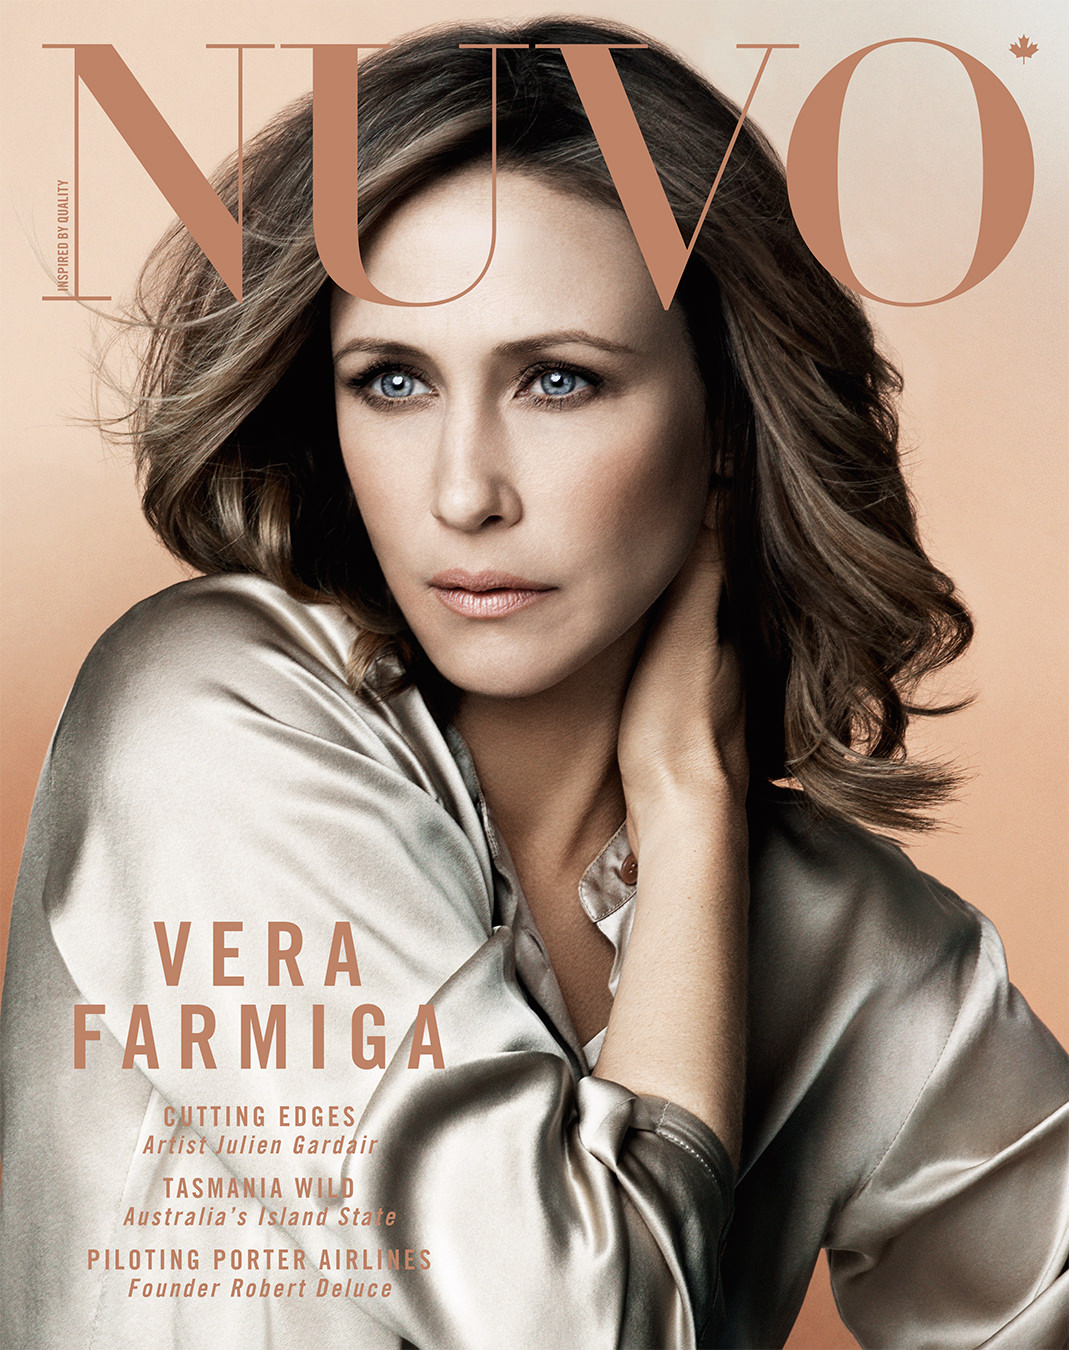 NUVO Magazine Autumn 2011 Cover featuring Vera Farmiga